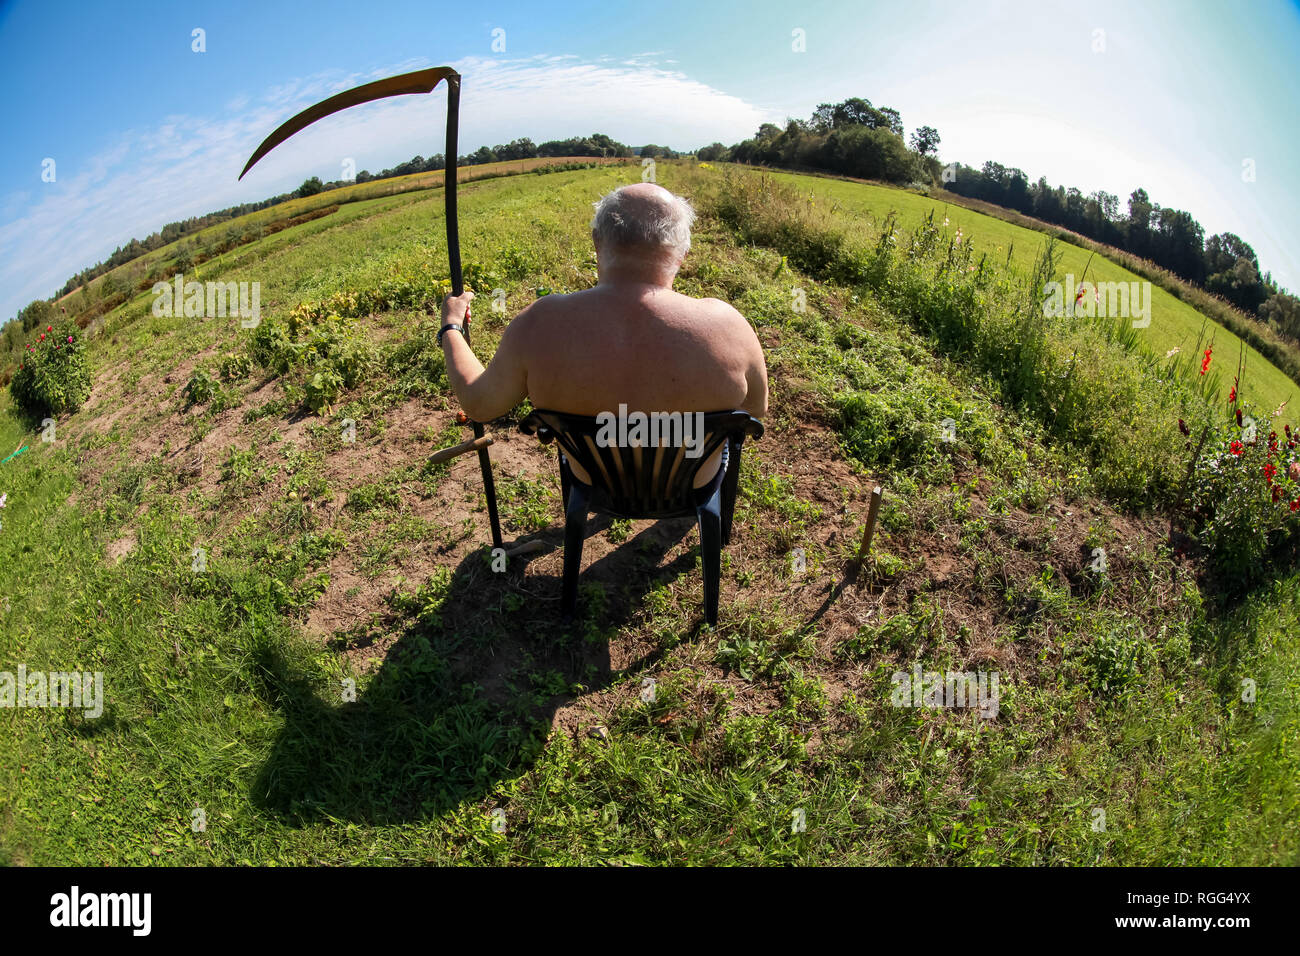 Bauer mit der Sense sitzen auf der Wiese. Landschaft mit alten Bauern sitzen auf der grünen Wiese. Bauer, Wiese und blauer Himmel. Stockfoto